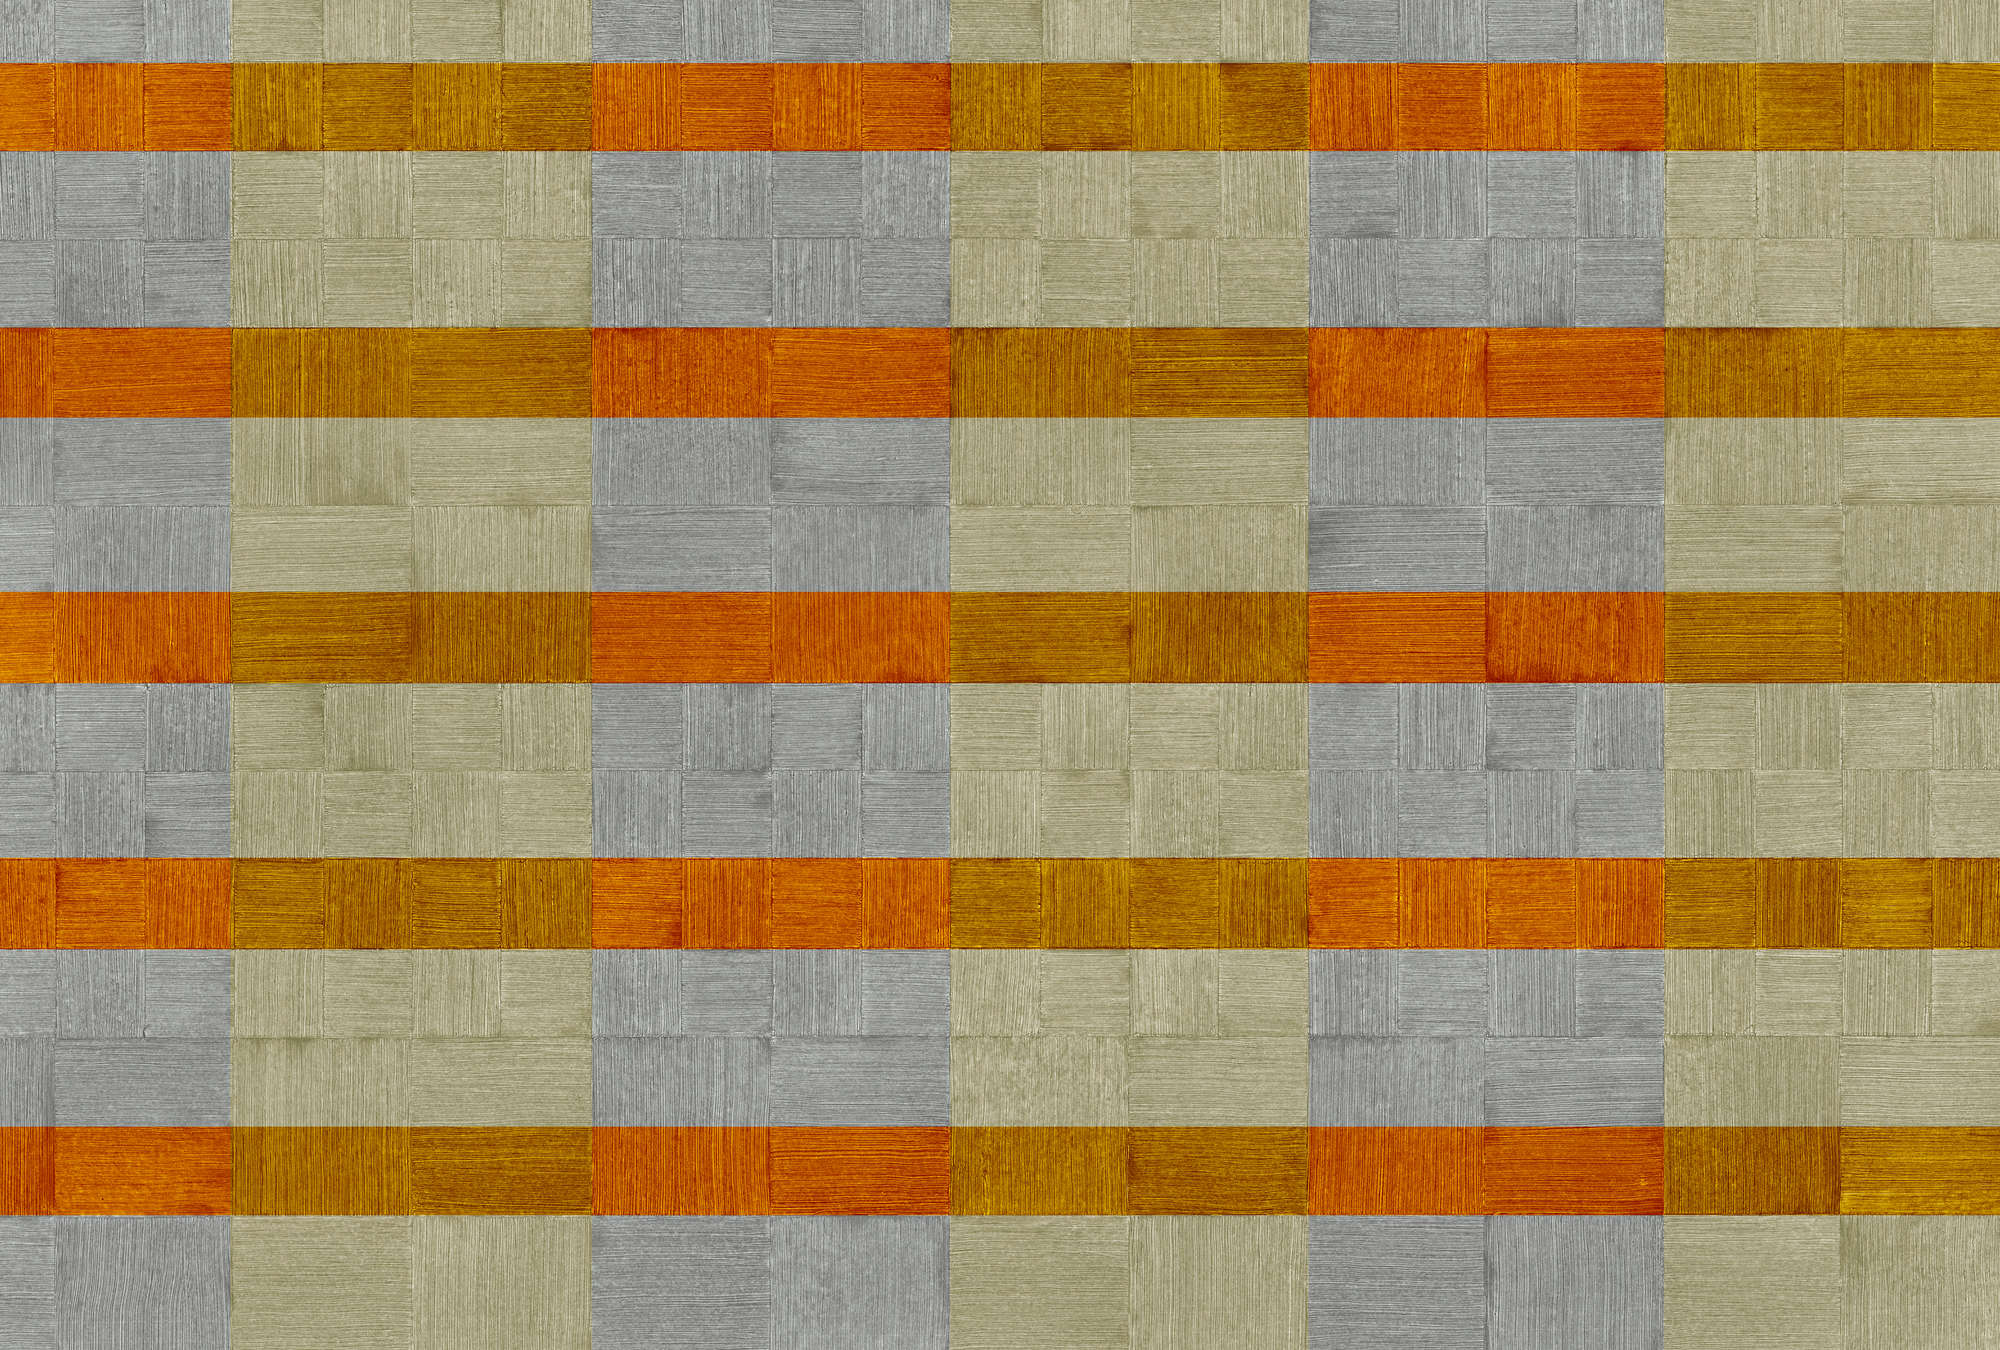             Papel pintado de diseño texturizado a rayas y cuadros - Gris, naranja, marrón
        